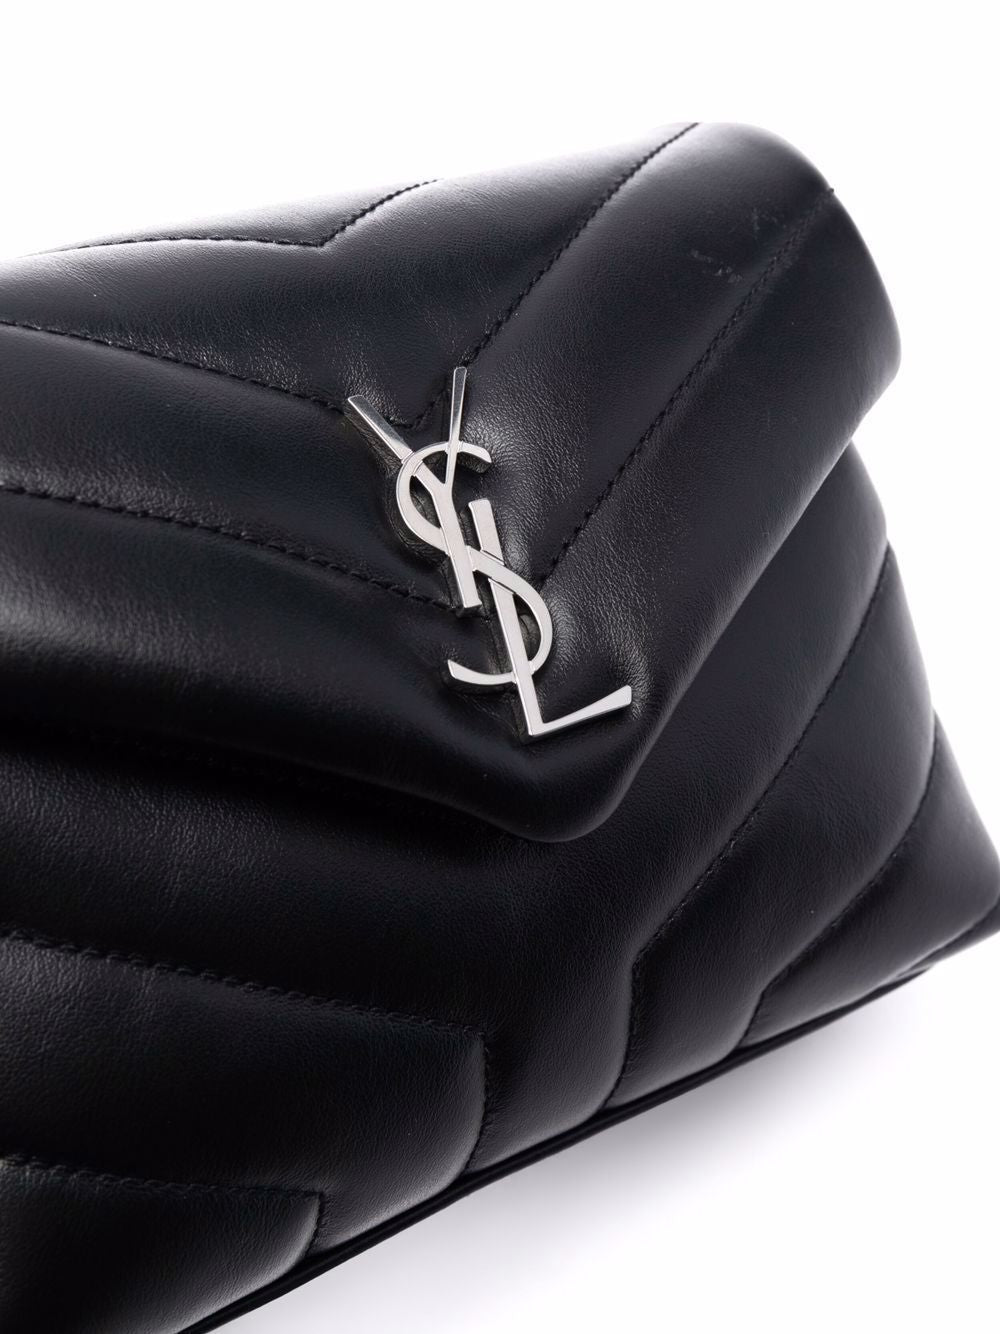 Túi xách da bò sang trọng với biểu tượng logo đặc trưng màu nero